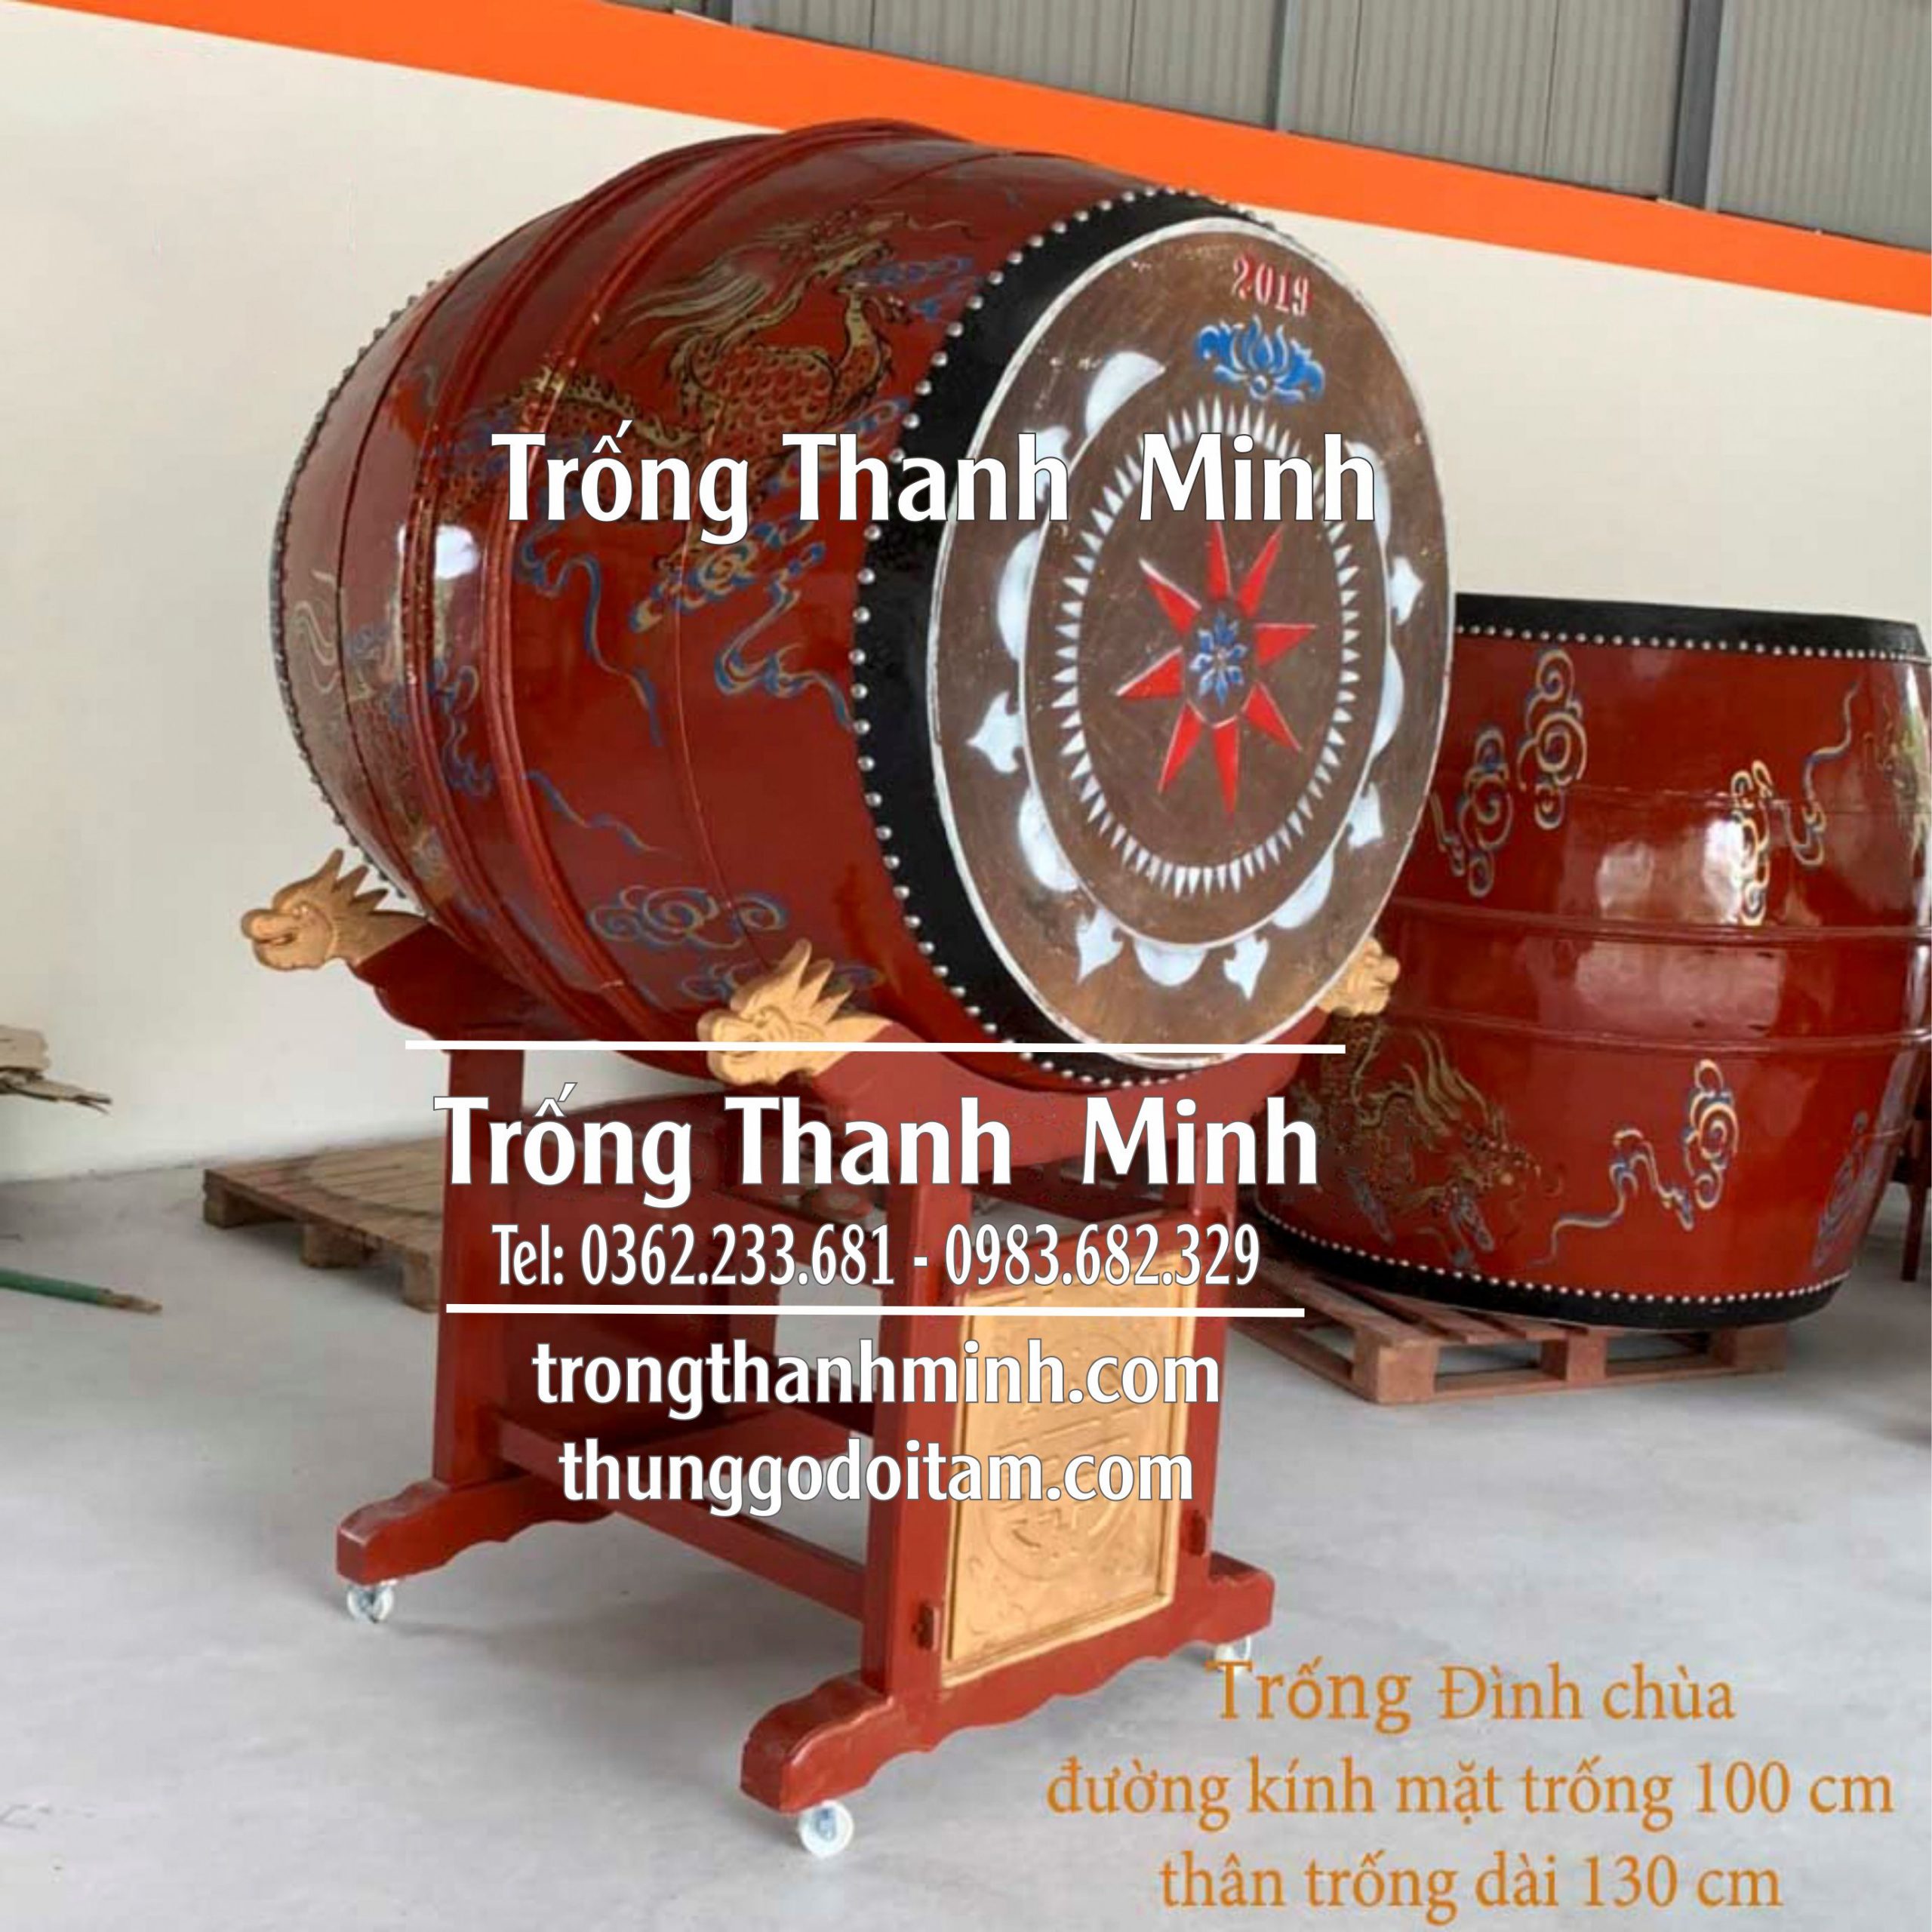 Xưởng sản xuất Trống chùa Thanh Minh kích thước mặt trống 100cm cao 130cm